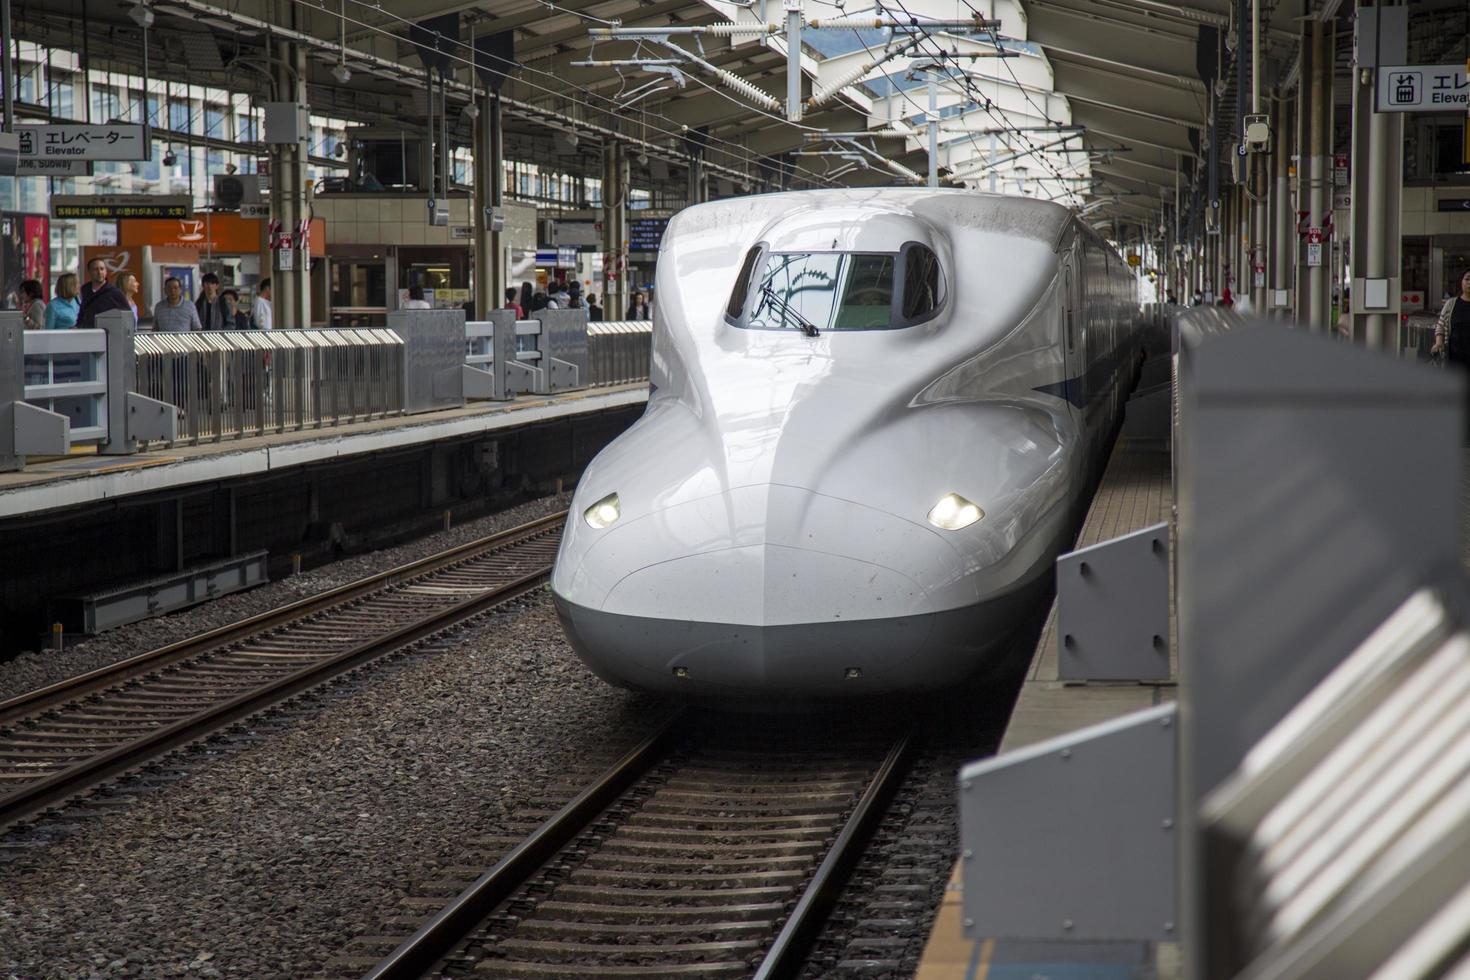 kyoto, japon, 2016 - train à grande vitesse shinkansen n700 à la gare de kyoto au japon. Les trains de la série n700 ont une vitesse maximale de 300 km/h. photo